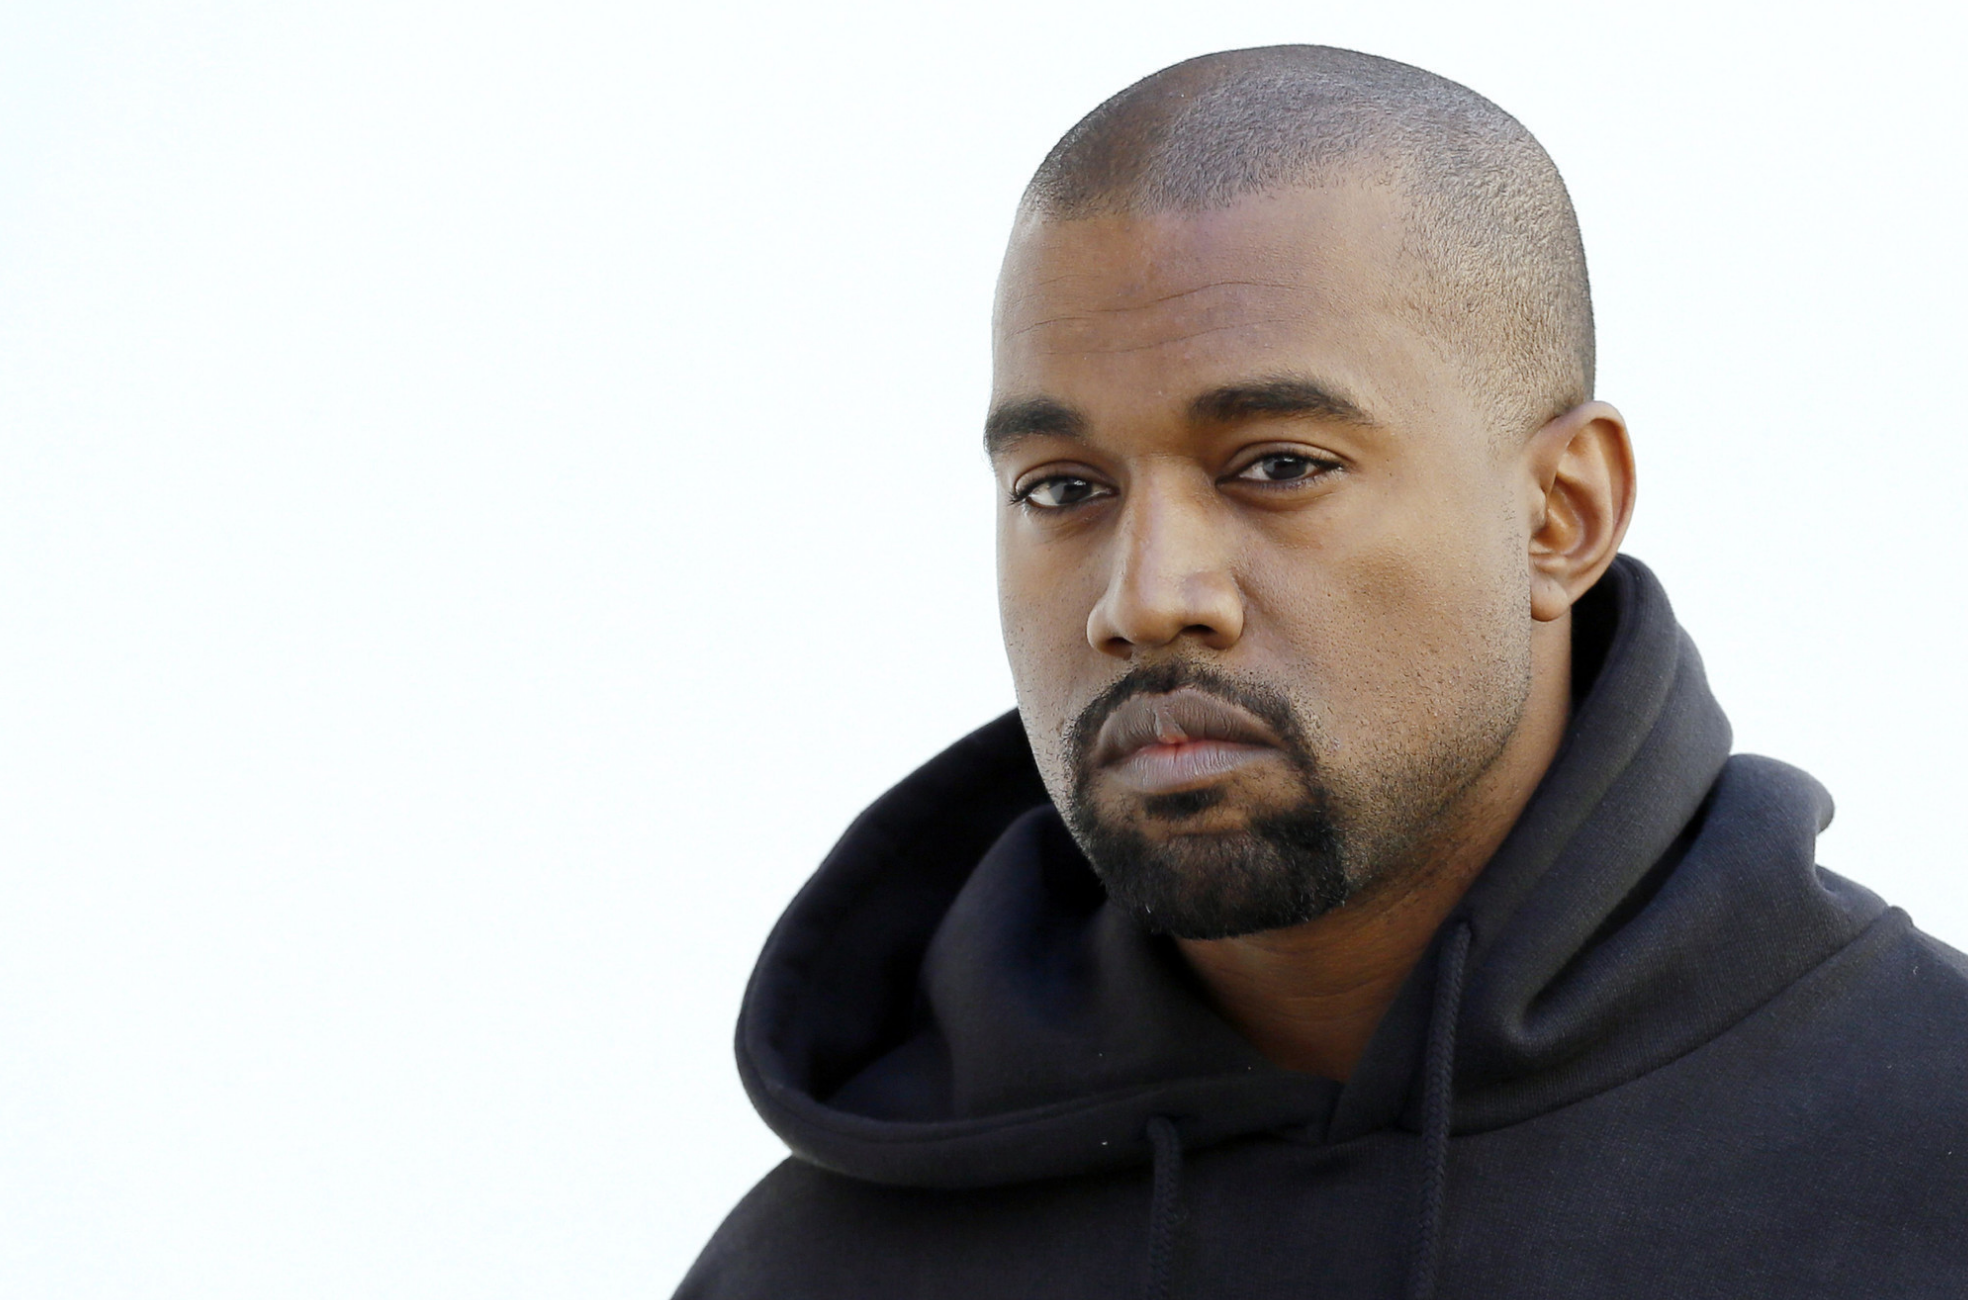 ¿Kanye West Sufre De Problemas Mentales? El Cantante Fue Hospitalizado